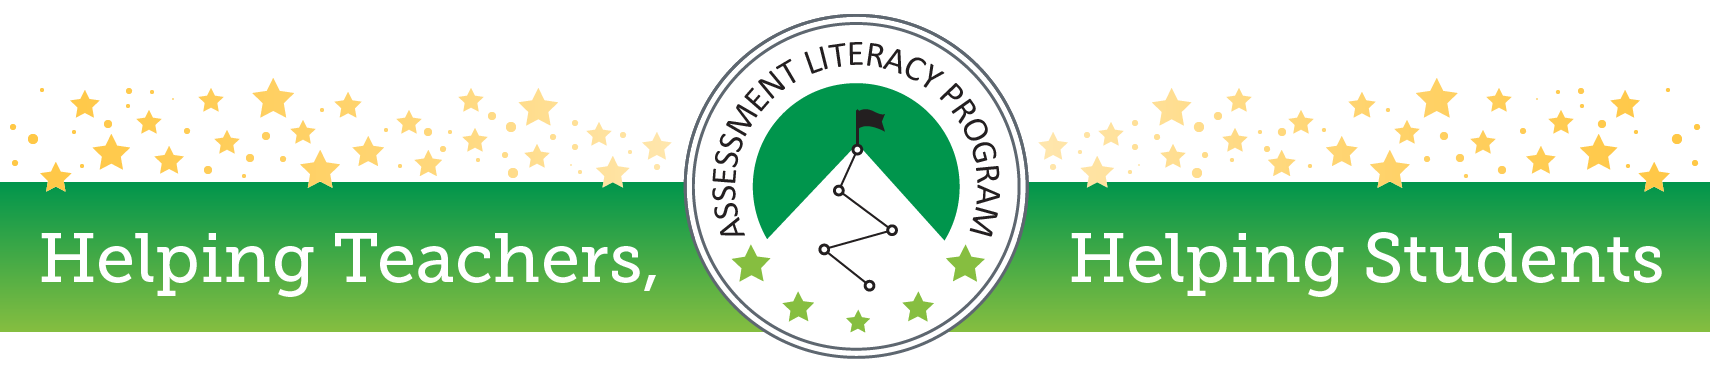 2017 CO Assessment Literacy Program Web Banner